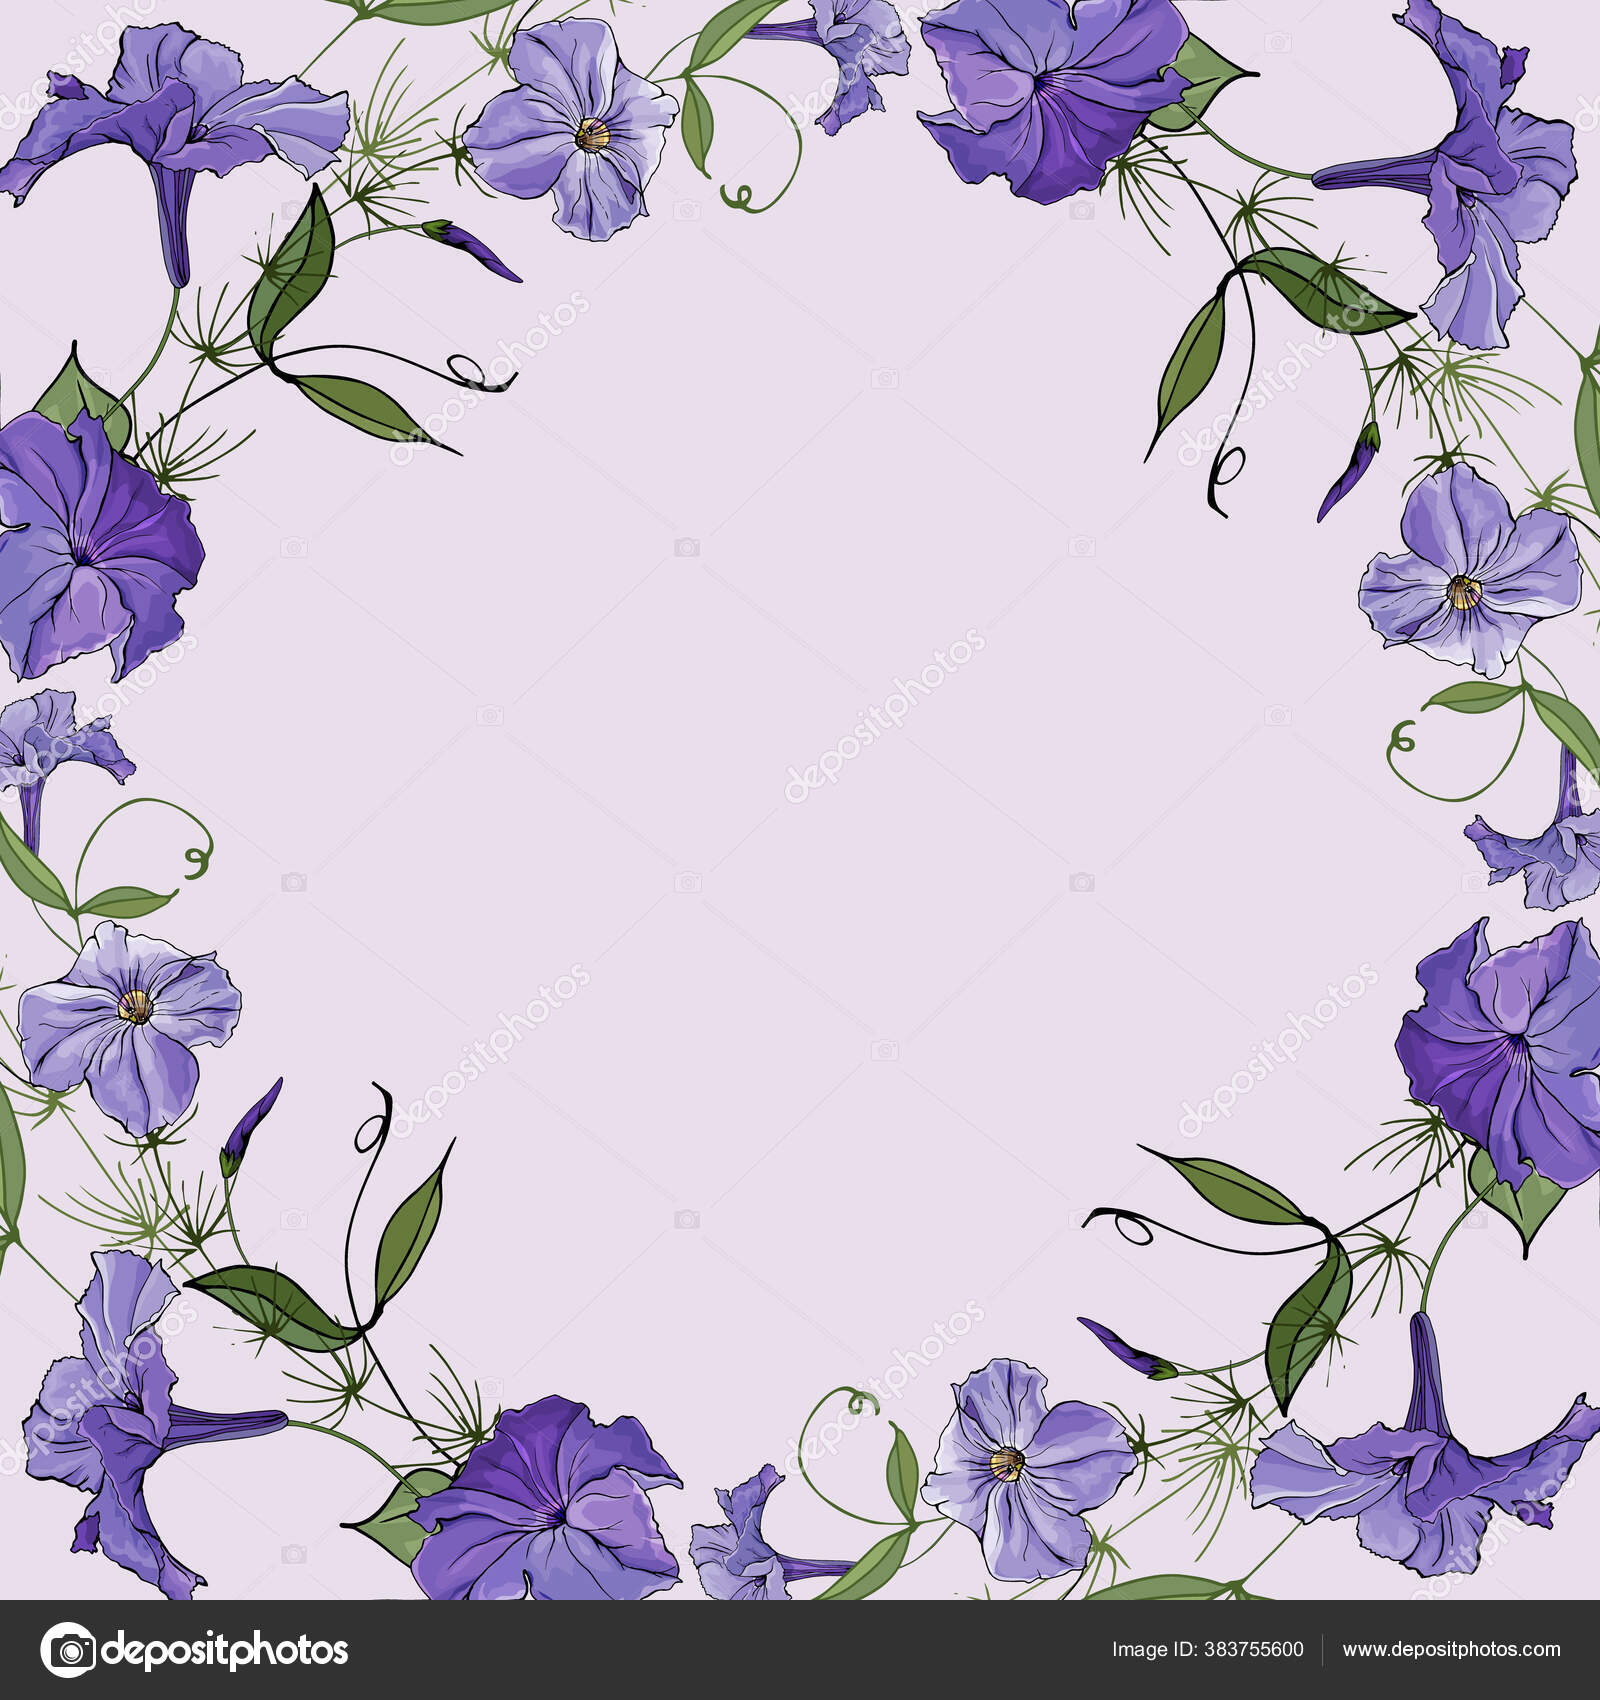 Fleur violet clair images vectorielles, Fleur violet clair vecteurs libres  de droits | Depositphotos